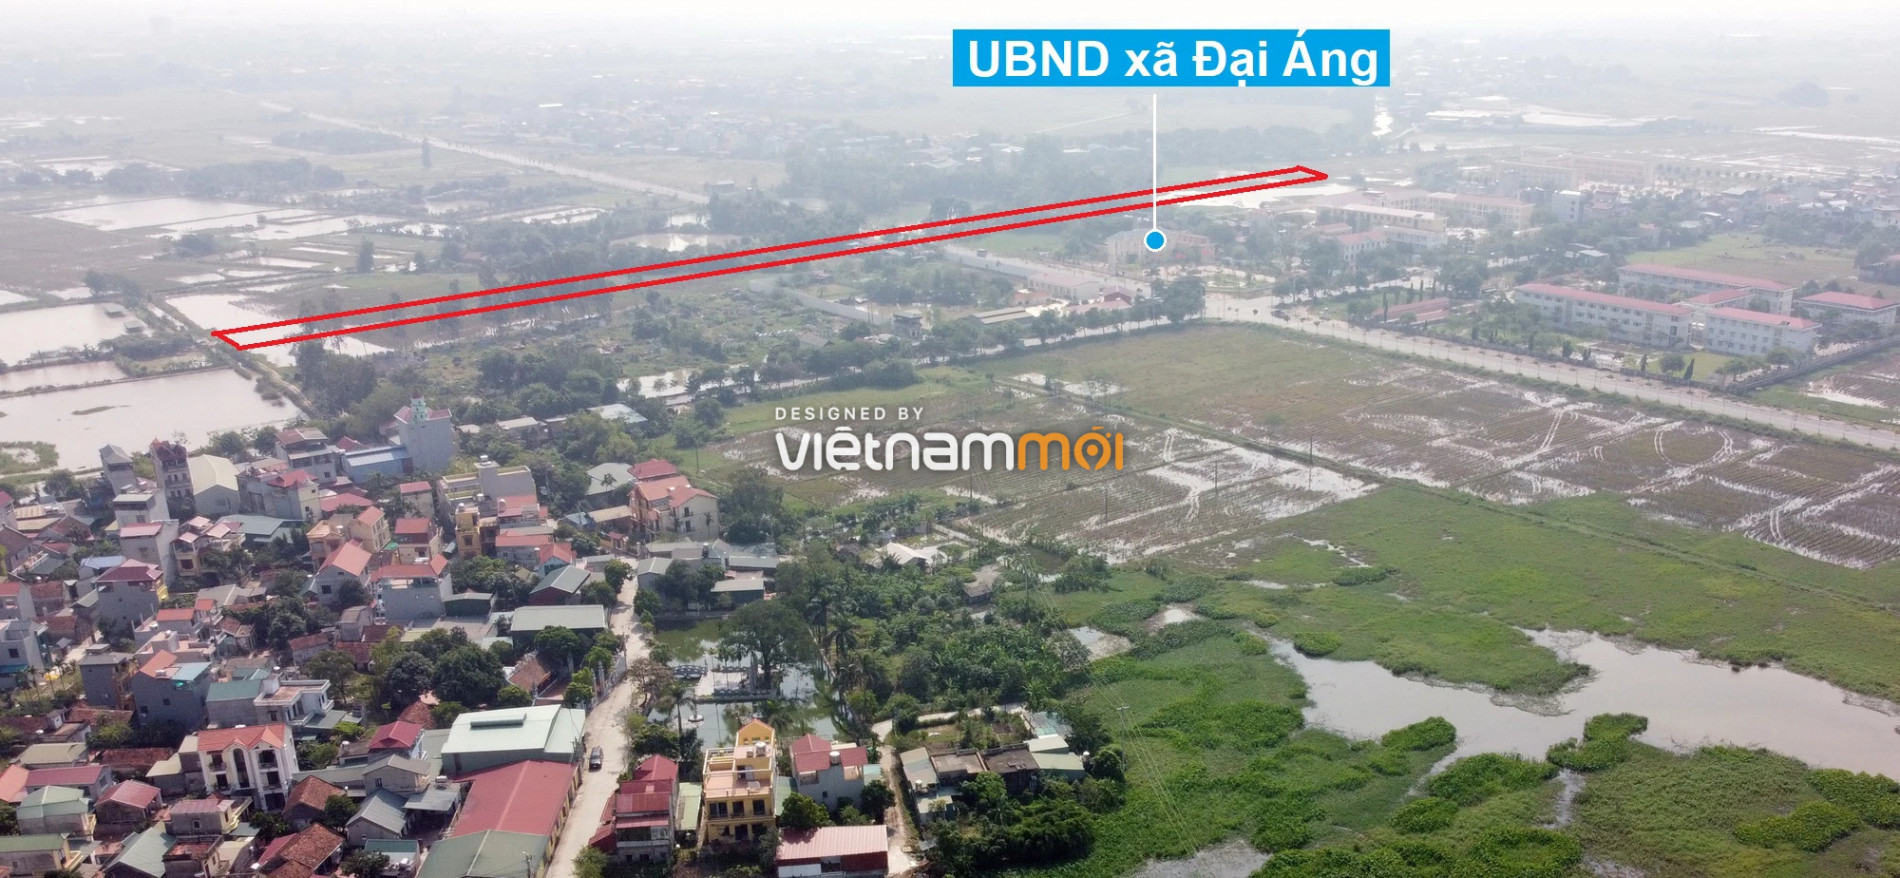 Những khu đất sắp thu hồi để mở đường ở xã Đại Áng, Thanh Trì, Hà Nội (phần 1) - Ảnh 6.